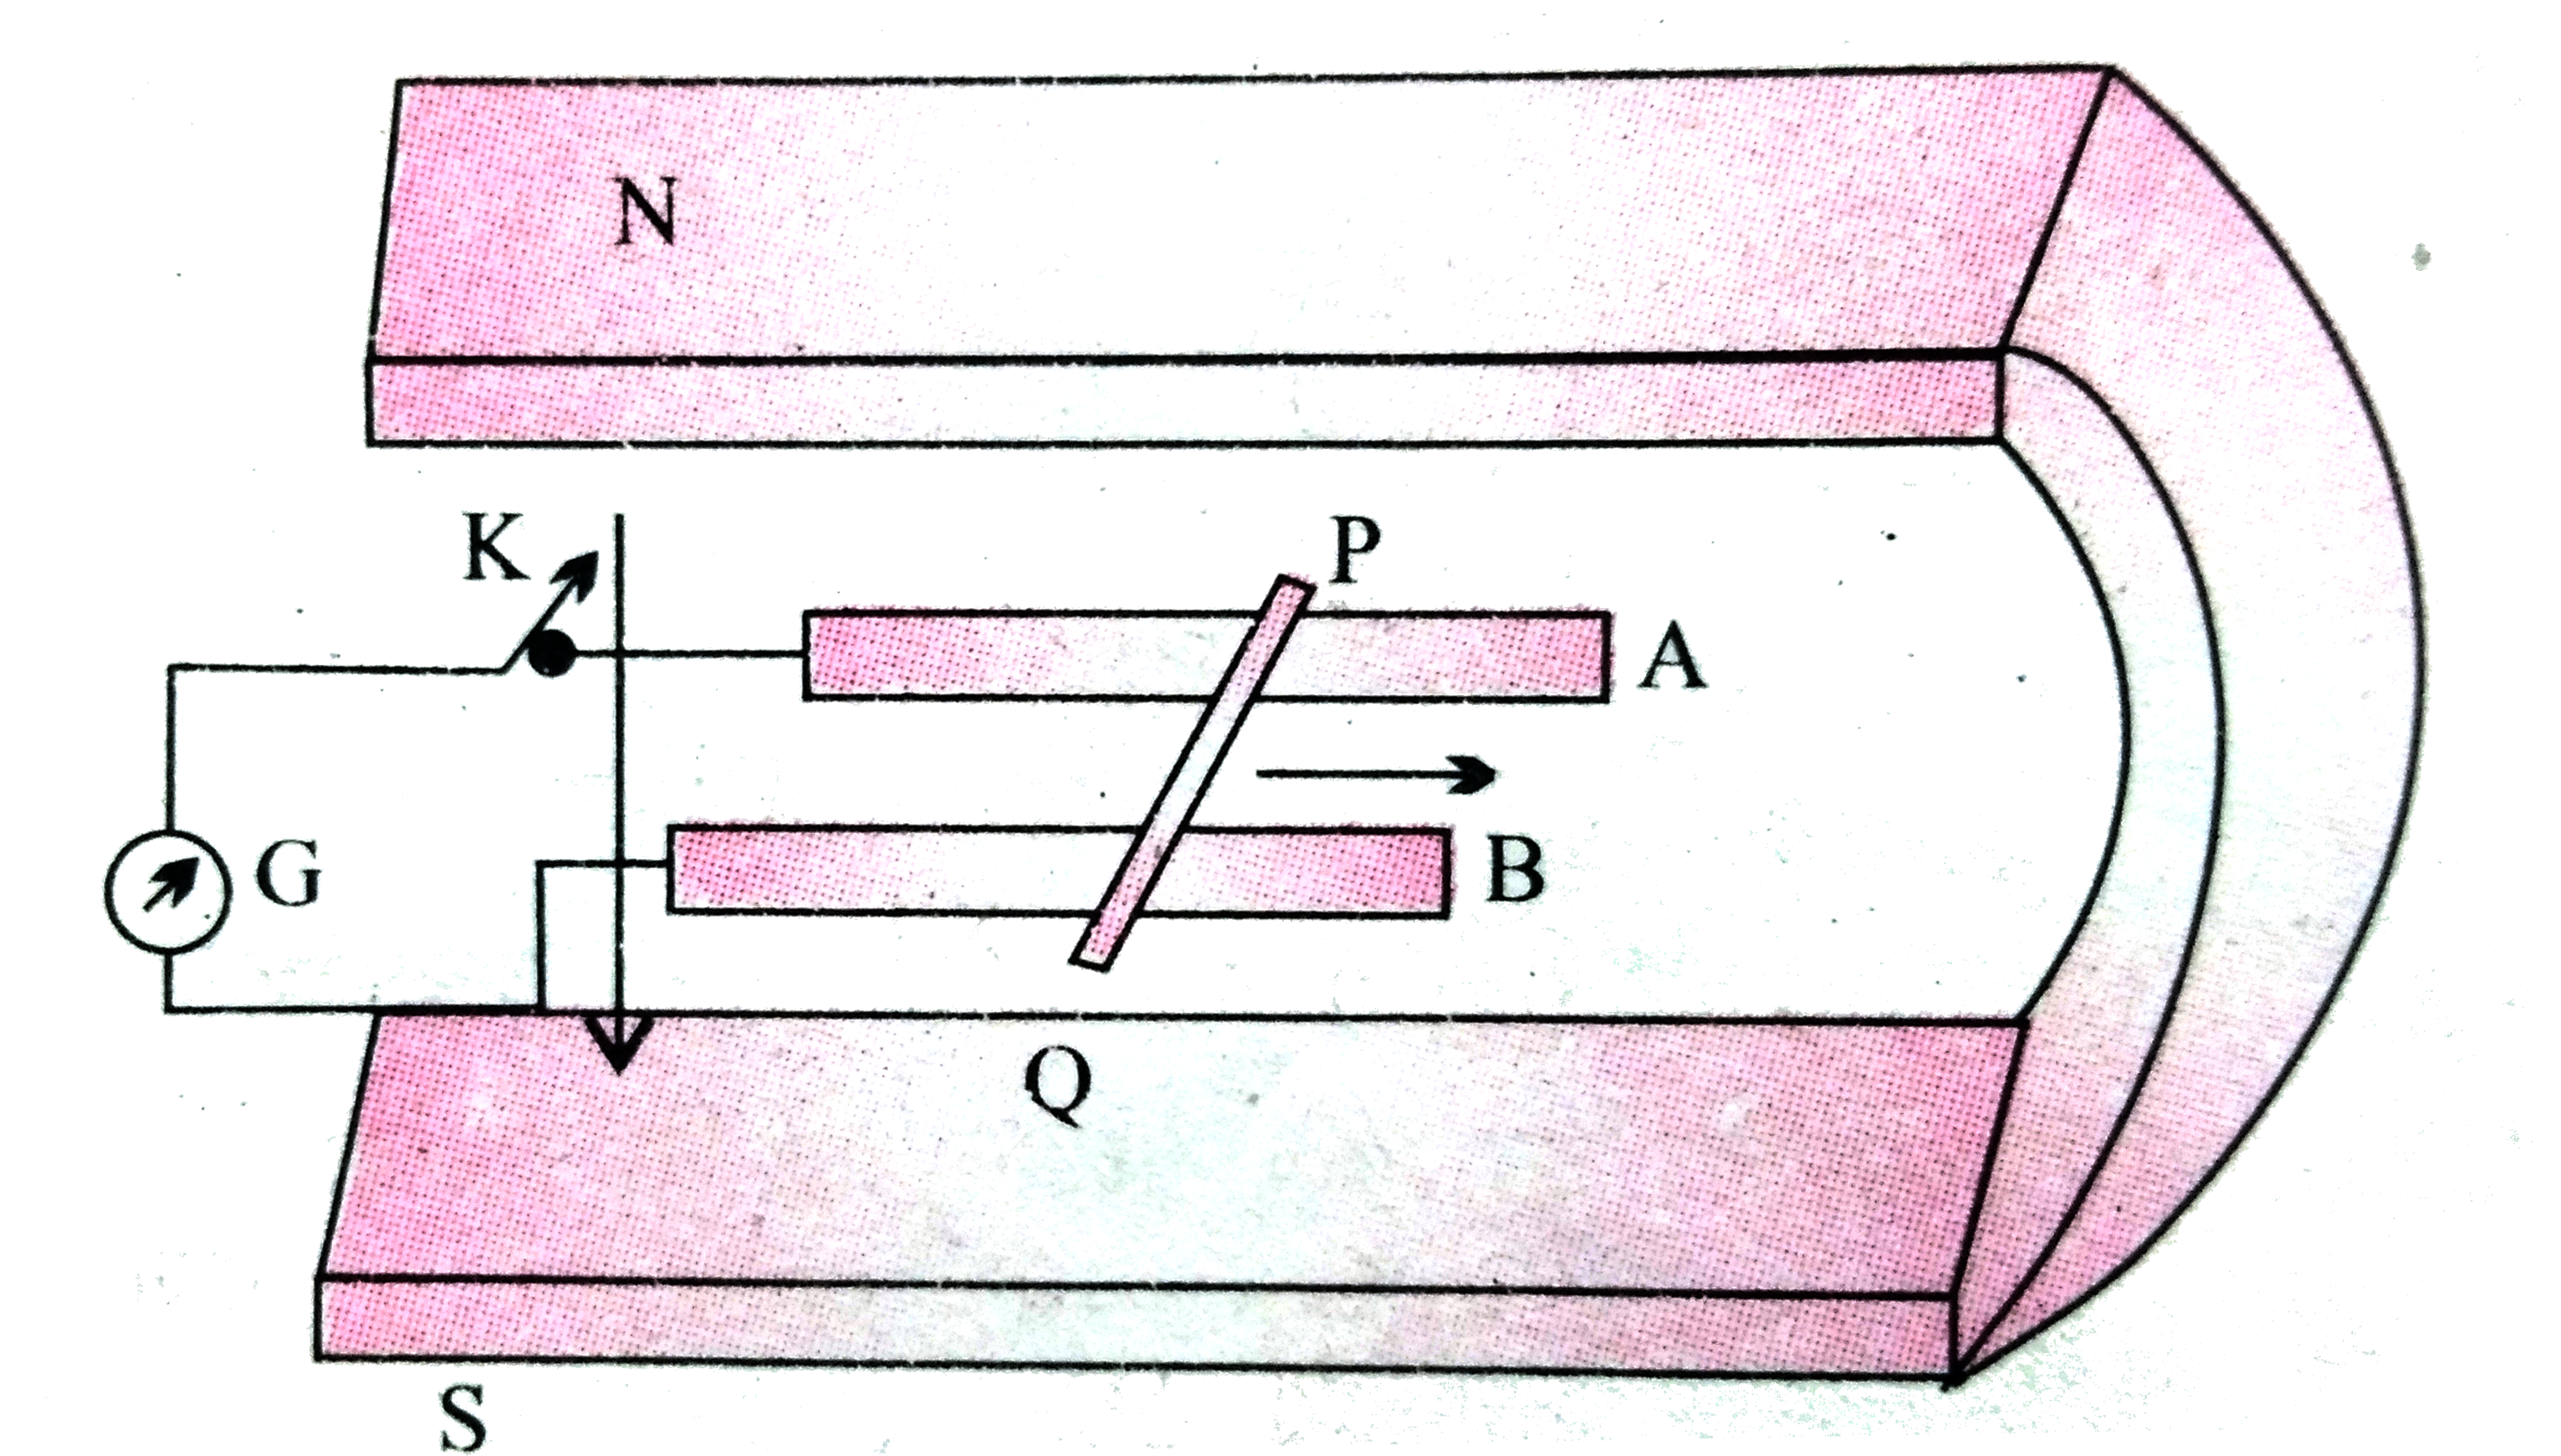 चित्र में एक धातु की  छड़ PQ  को दर्शाया गया है जो पटरियों AB पर रखी है तथा एक स्थायी चुम्बक के ध्रुवो के मध्य स्थित है । पटरियाँ , छड़ एवं चुंबकीय  क्षेत्र परस्पर  अभिलंबवत  दिशाओ में है ।एक गैल्वेनोमीटर ( धारामापी ) G  को पटरियों से एक स्विच K  की सहायता  से संयोजित  किया गया है । छड़ की लम्बाई 15  सेमी , B = 0.50 T  तथा  पटरियों , छड़ धारामापी से बने बंद लूप का प्रतिरोध =  9.0  mOmega   है । क्षेत्र  को एकसमान  मान ले ।    कुंजी बंद है तथा छड़ 12 सेमी /से  की चाल  से दर्शायी गयी दिशा में गतिमान होने की स्थिति में छड़ पर लगने वाले अवमंदन बल का मान क्या होगा ?